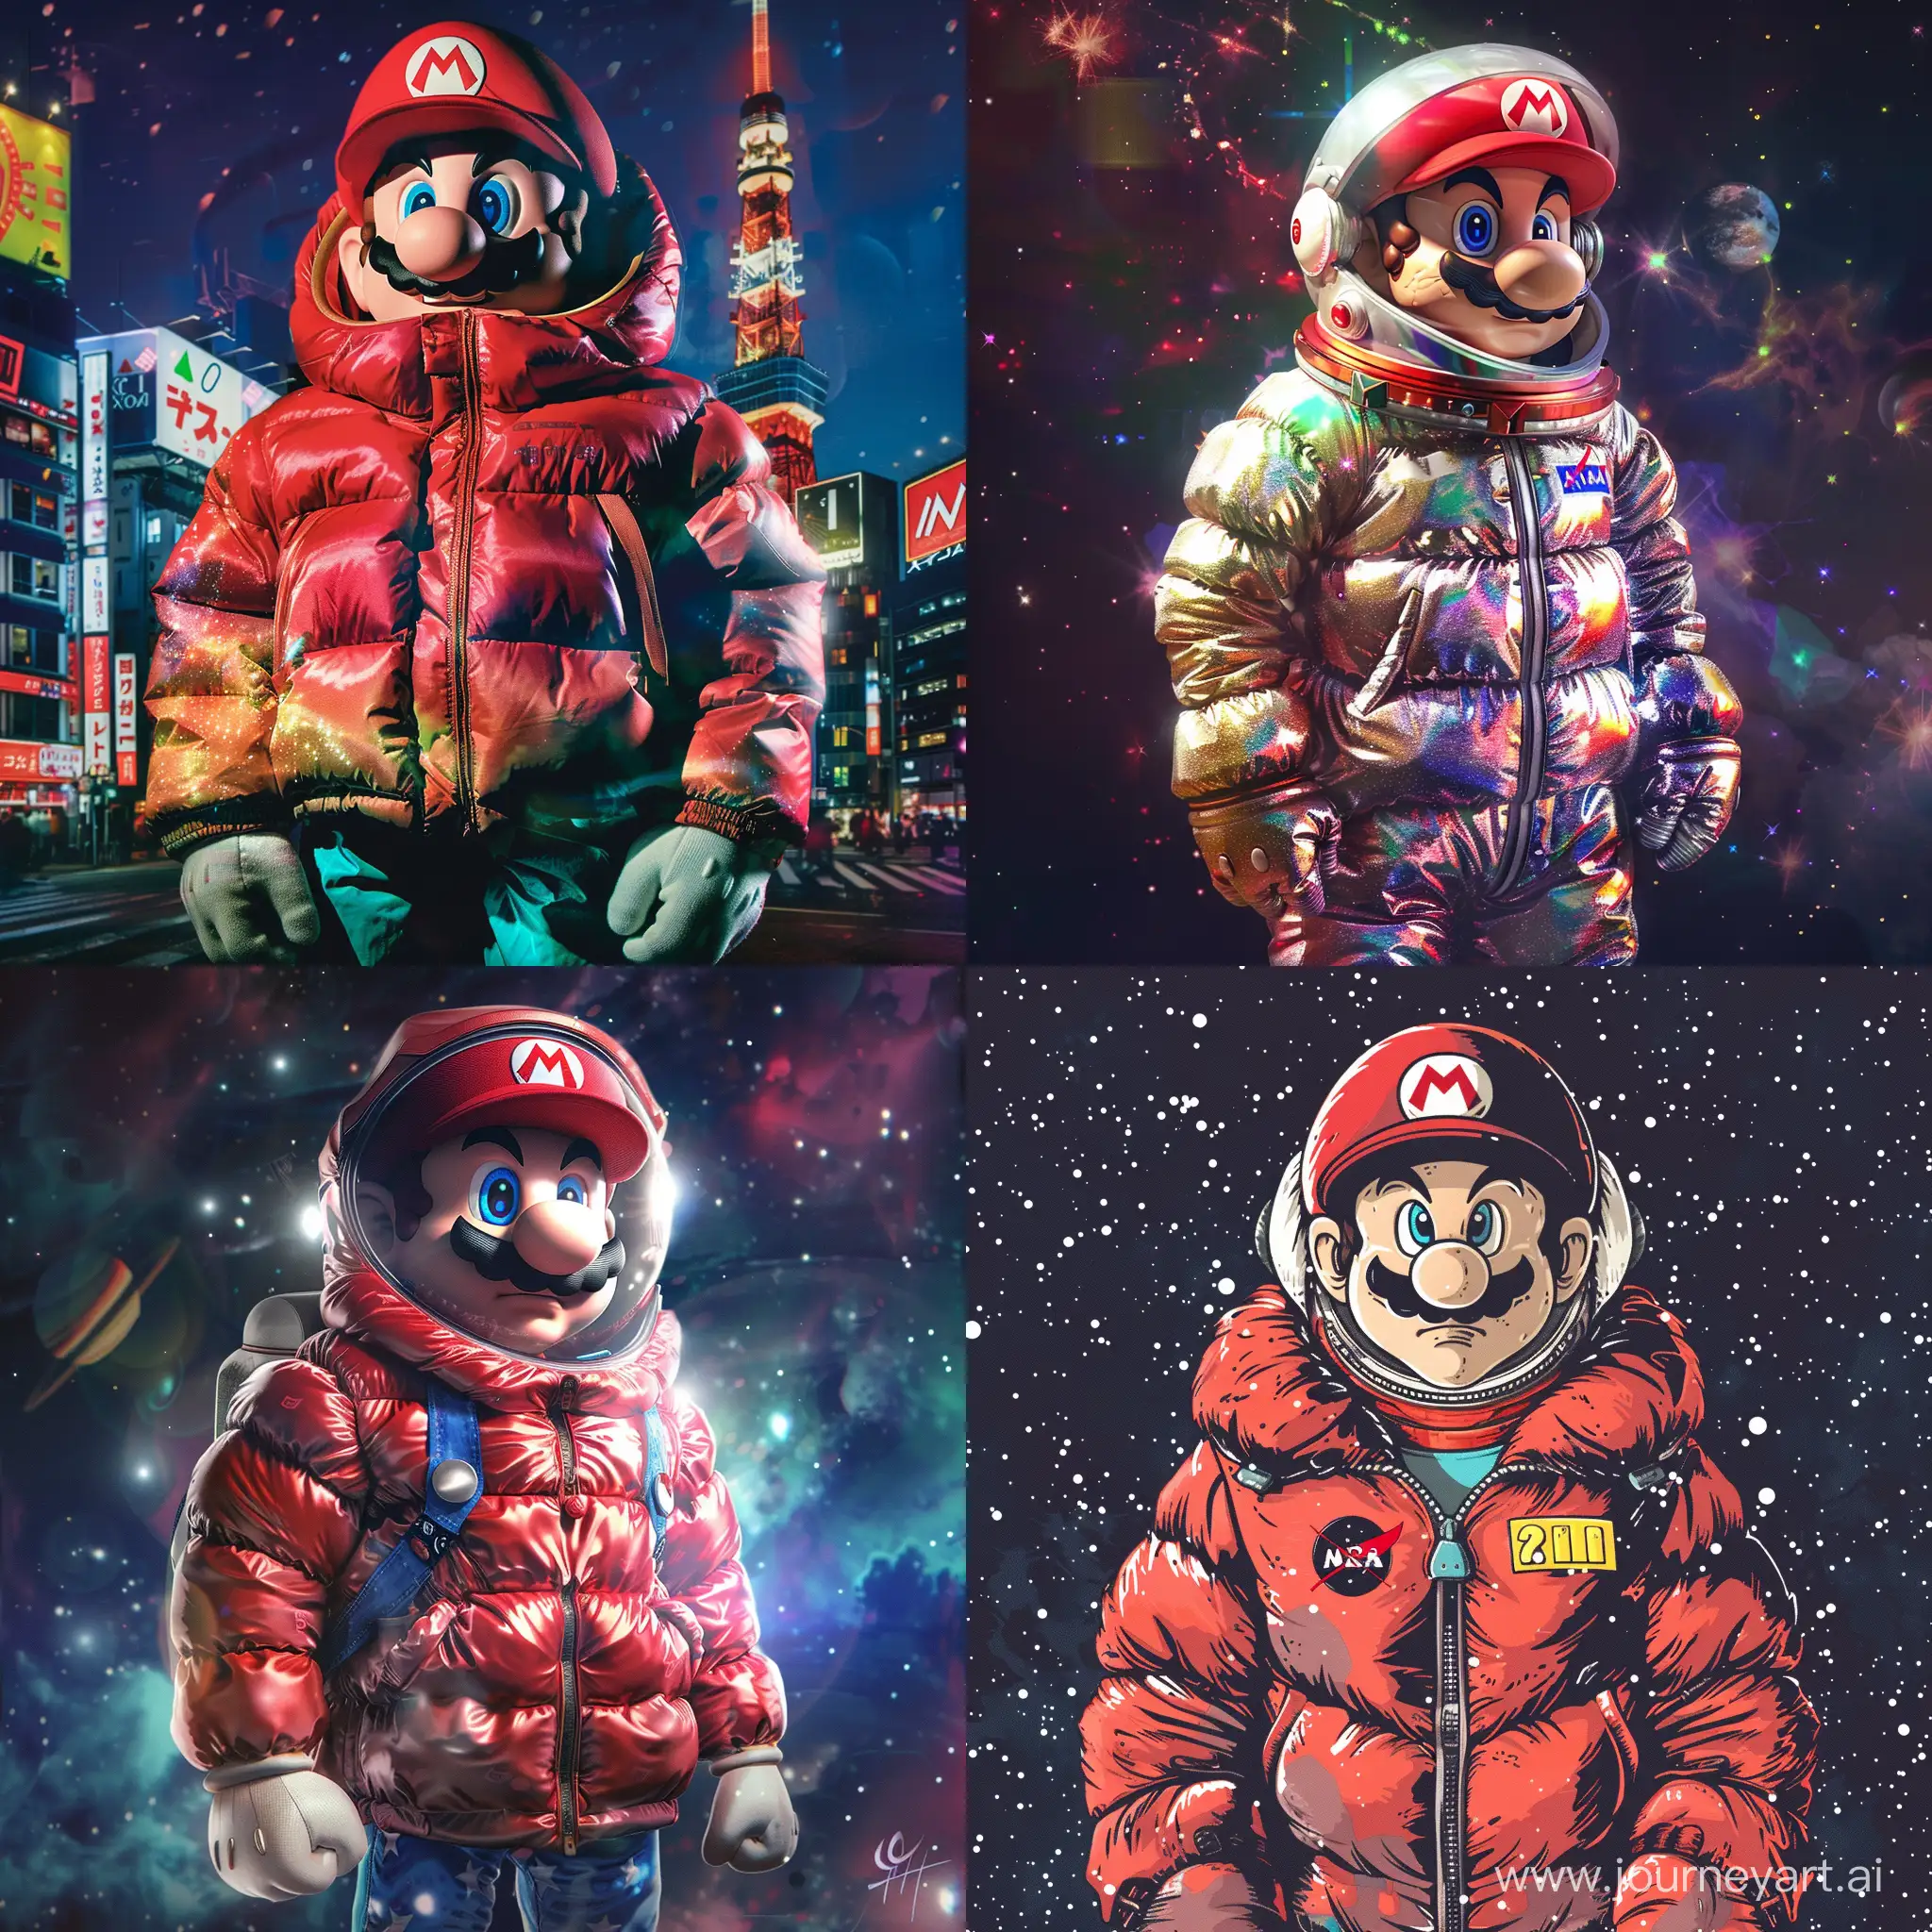 Mario-Explores-Tokyo-in-Iconic-Down-Jacket